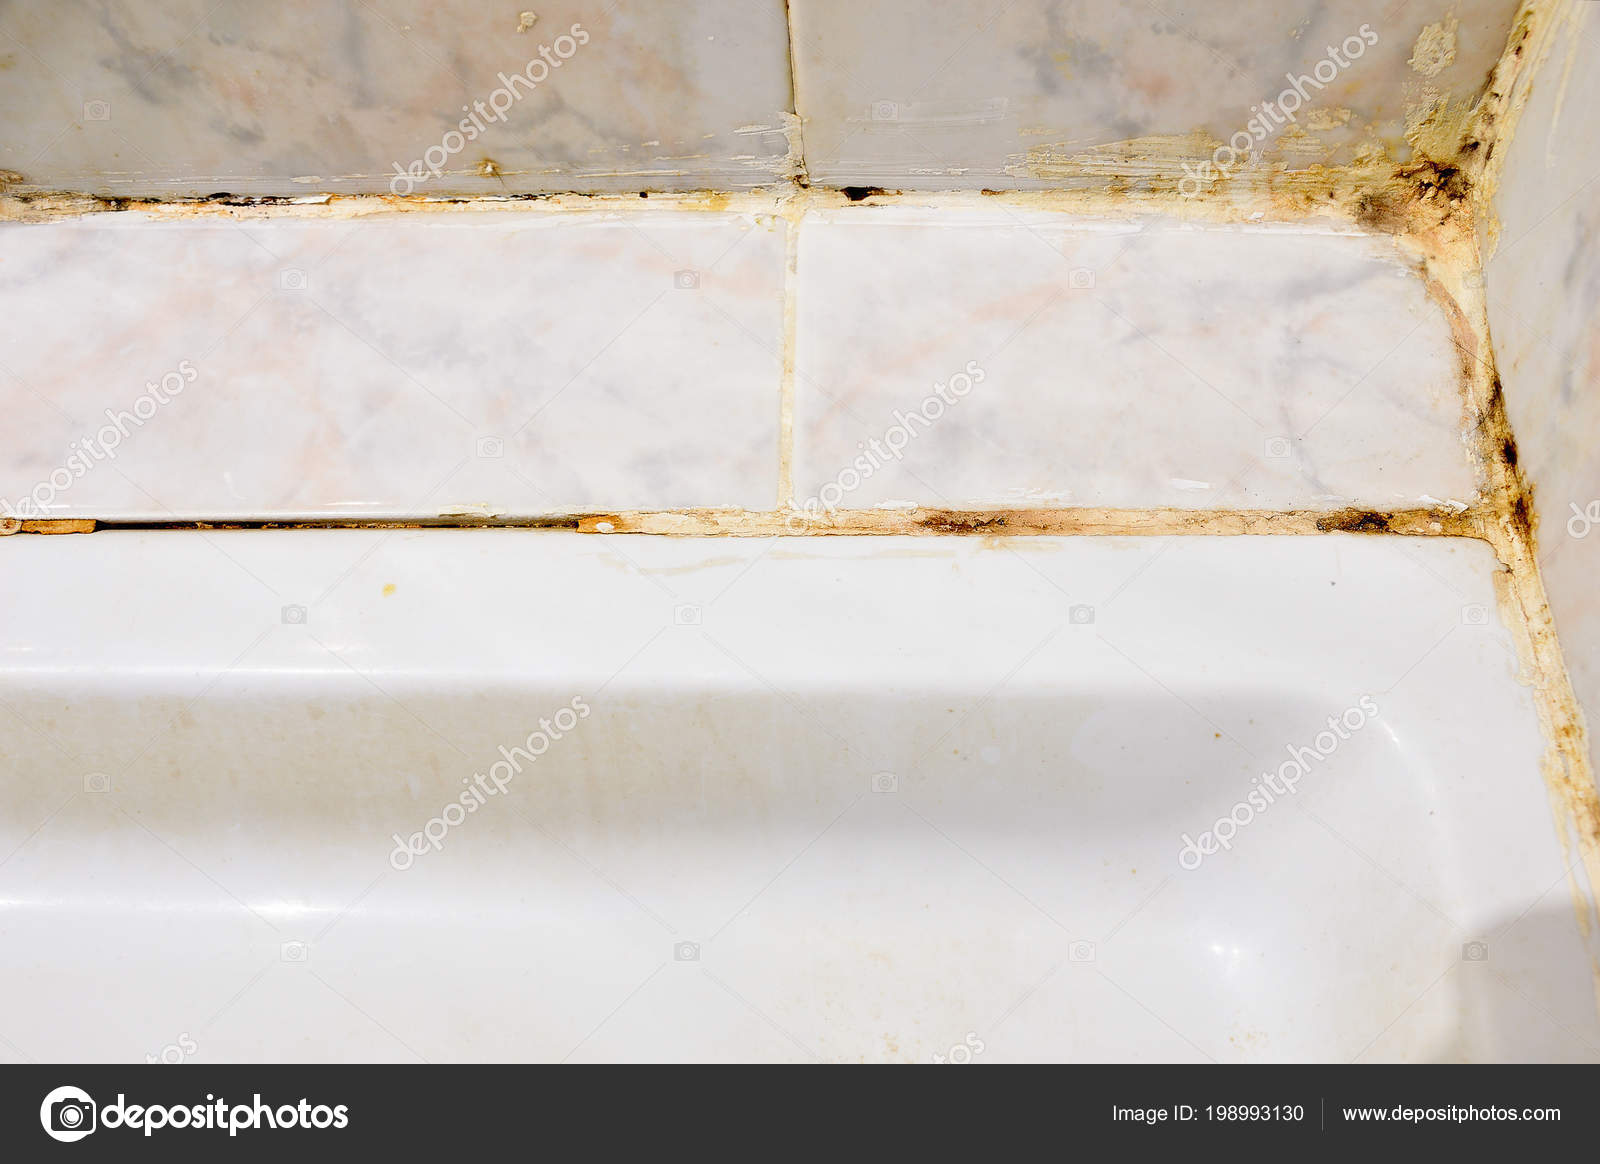 Disgusting Home Shower Bathroom Tile, Bathroom Tile Sealer